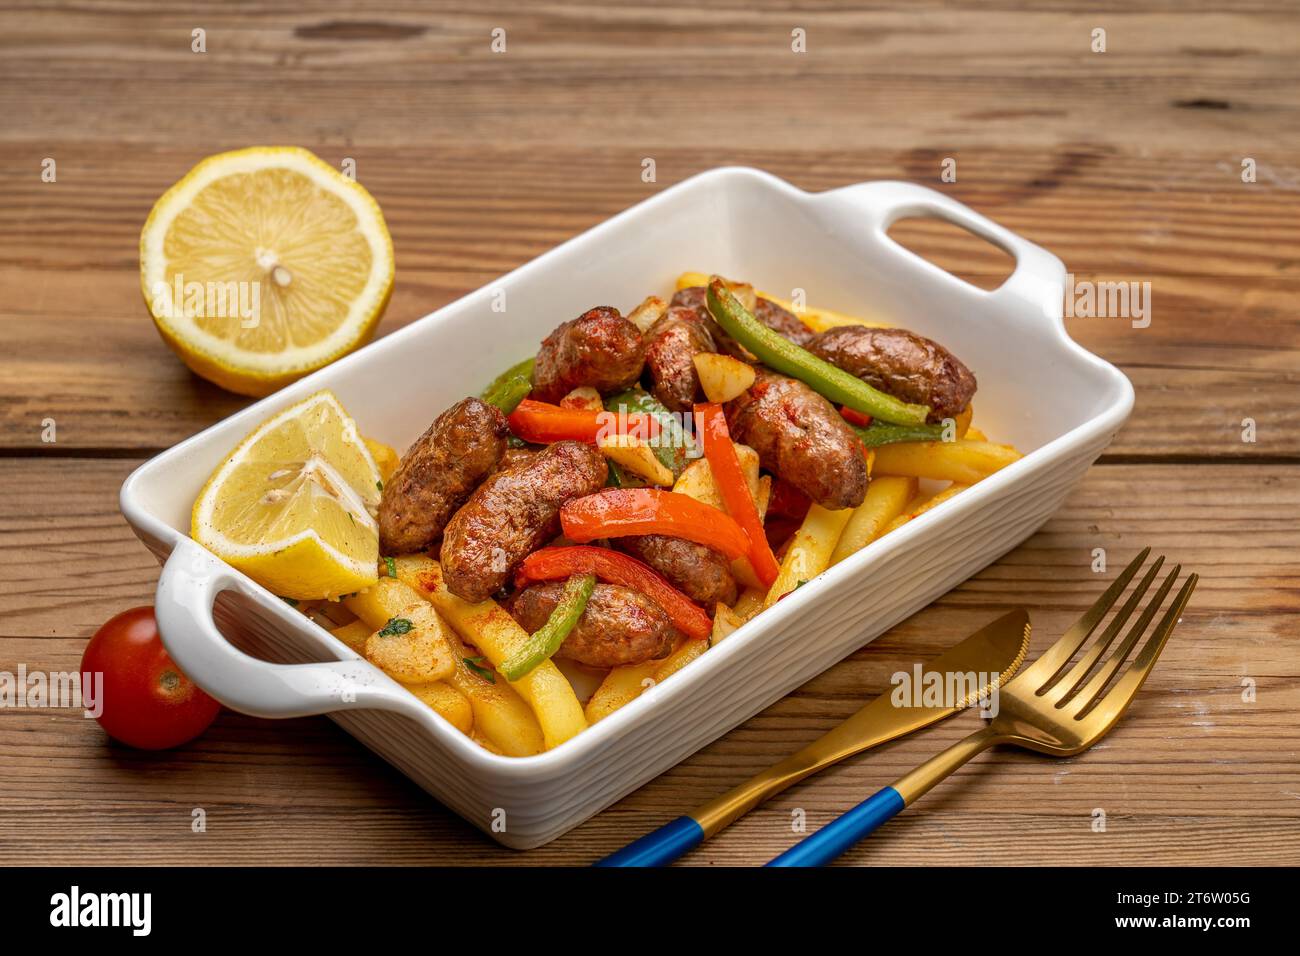 Une assiette en céramique blanche remplie de steak grillé et de légumes frais, accompagnée d'une fourchette en métal jaune Banque D'Images